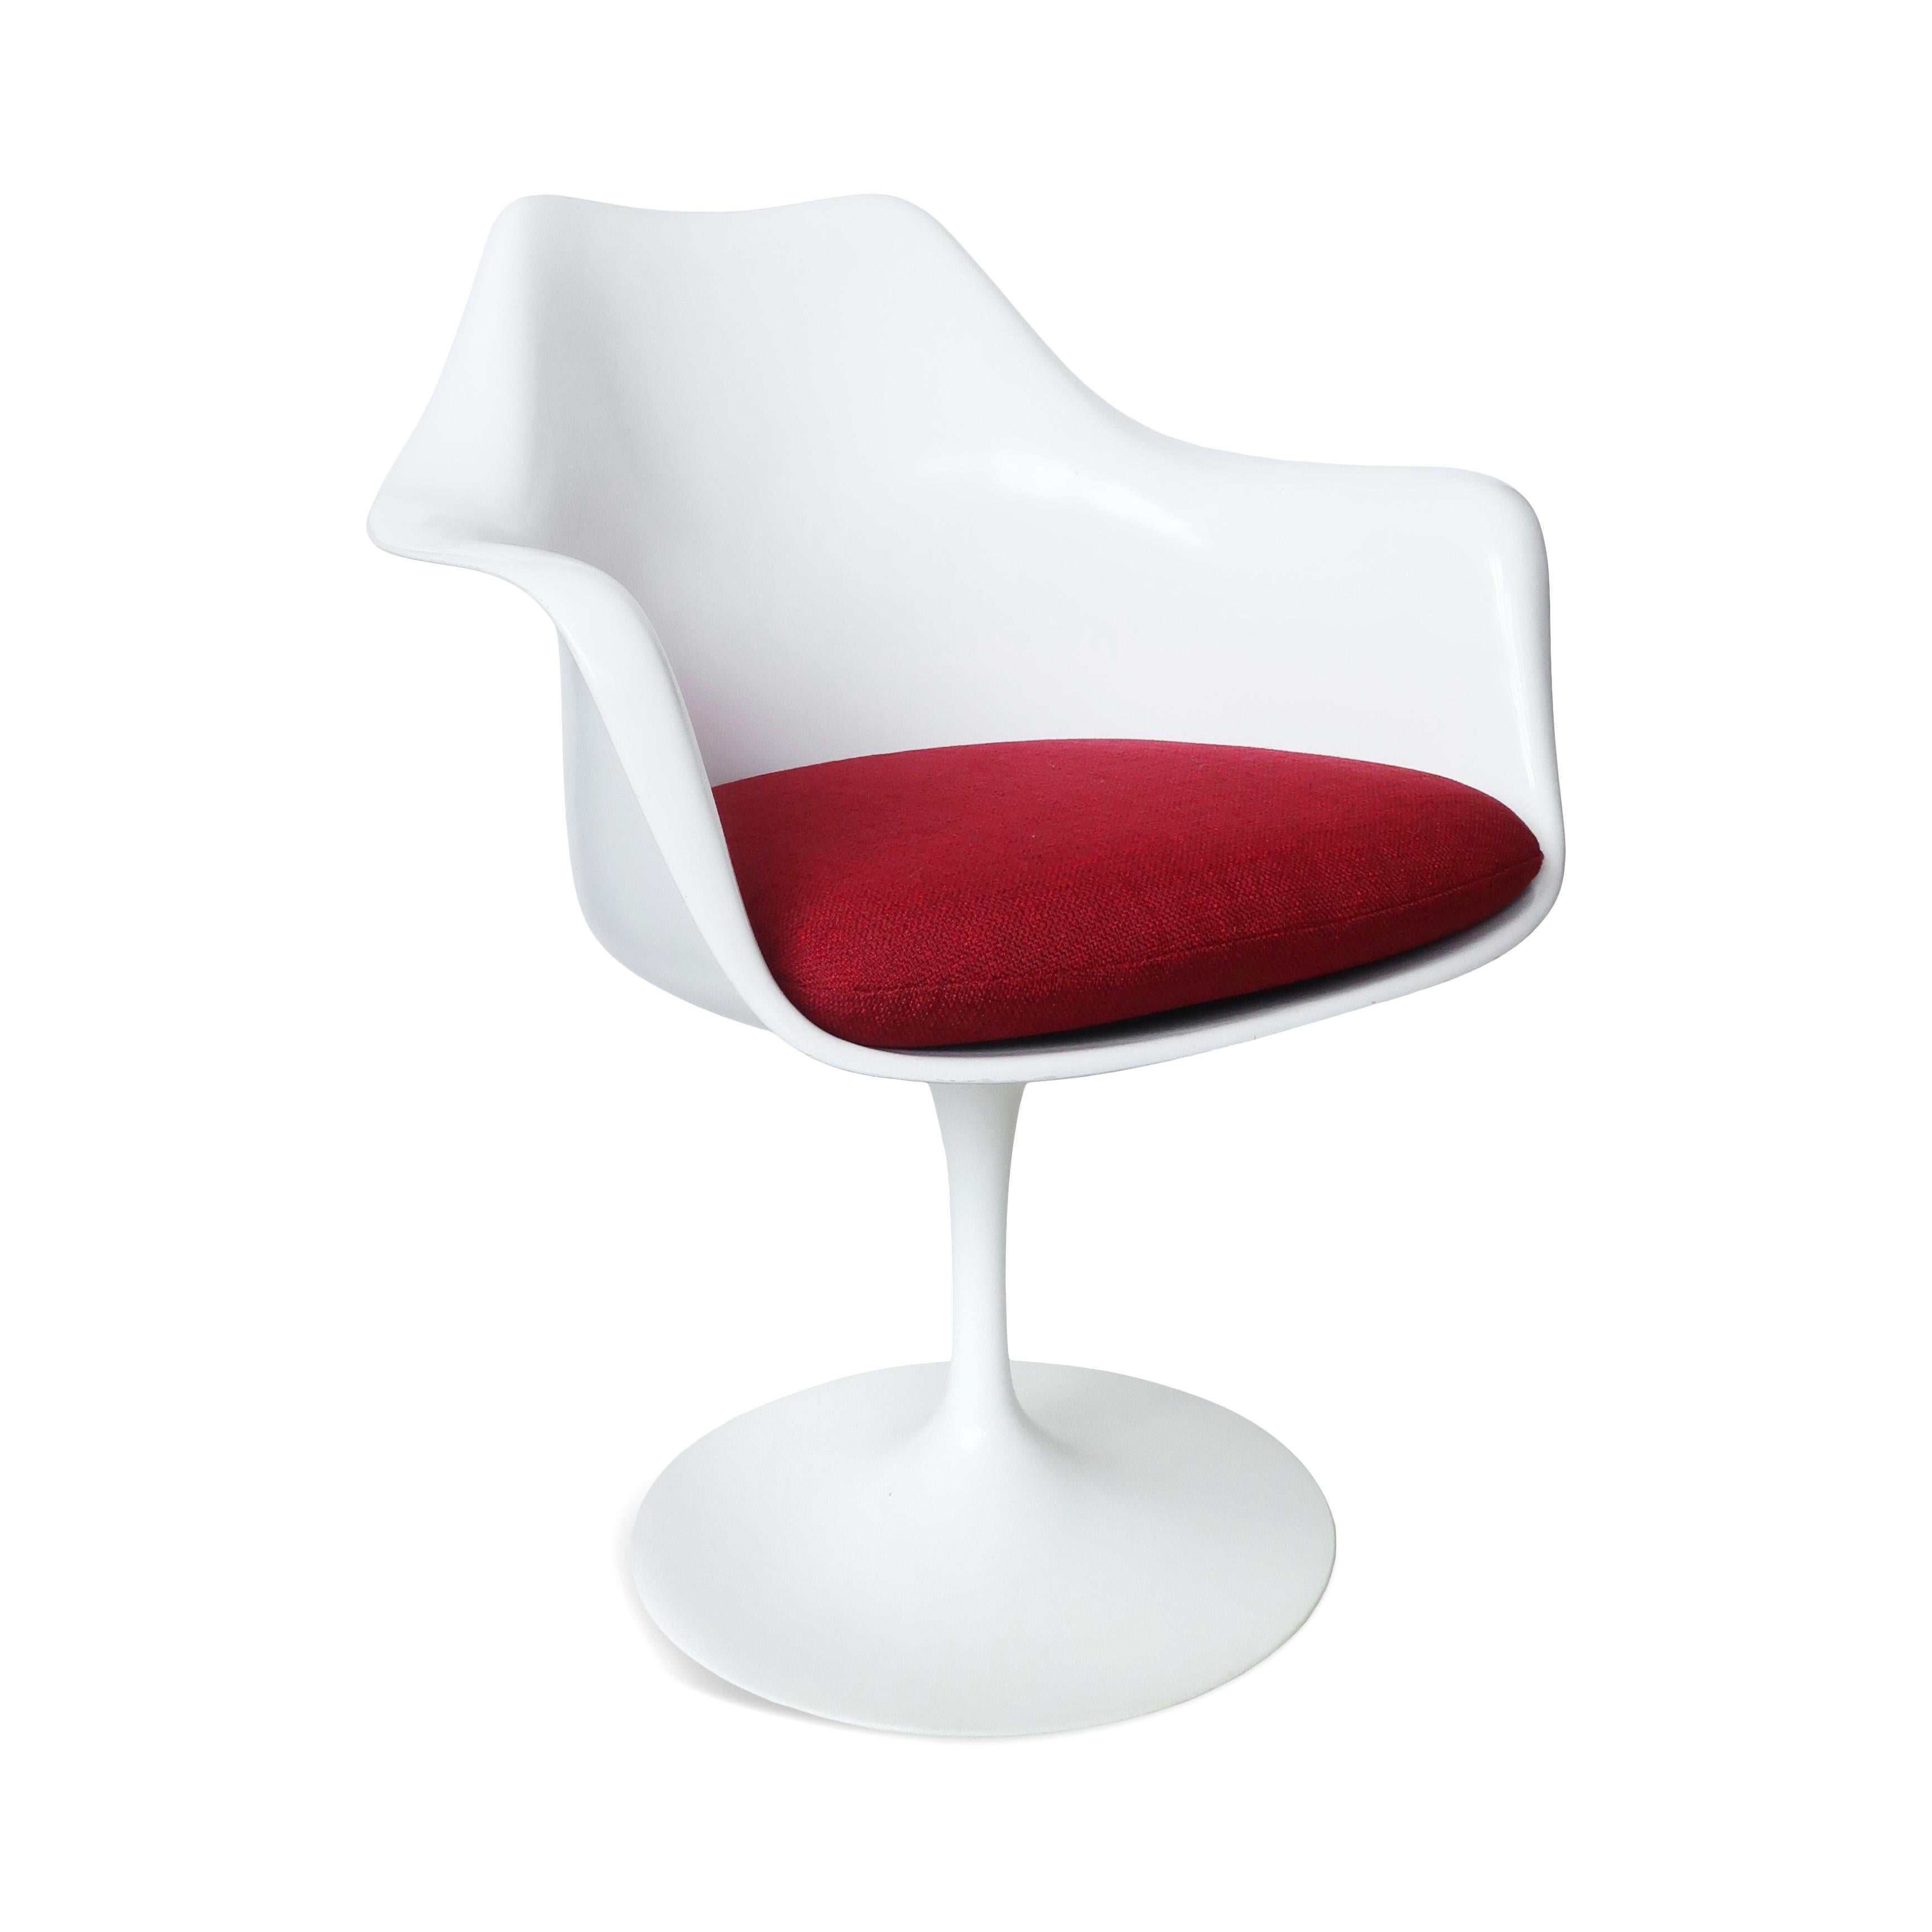 Pièce classique du design moderne alliant élégance et fonctionnalité, le fauteuil tulipe de Knoll a été conçu par Eero Saarinen en 1957.  Il présente une forme élégante et sculpturale qui élimine l'encombrement des pieds et crée un aspect homogène.